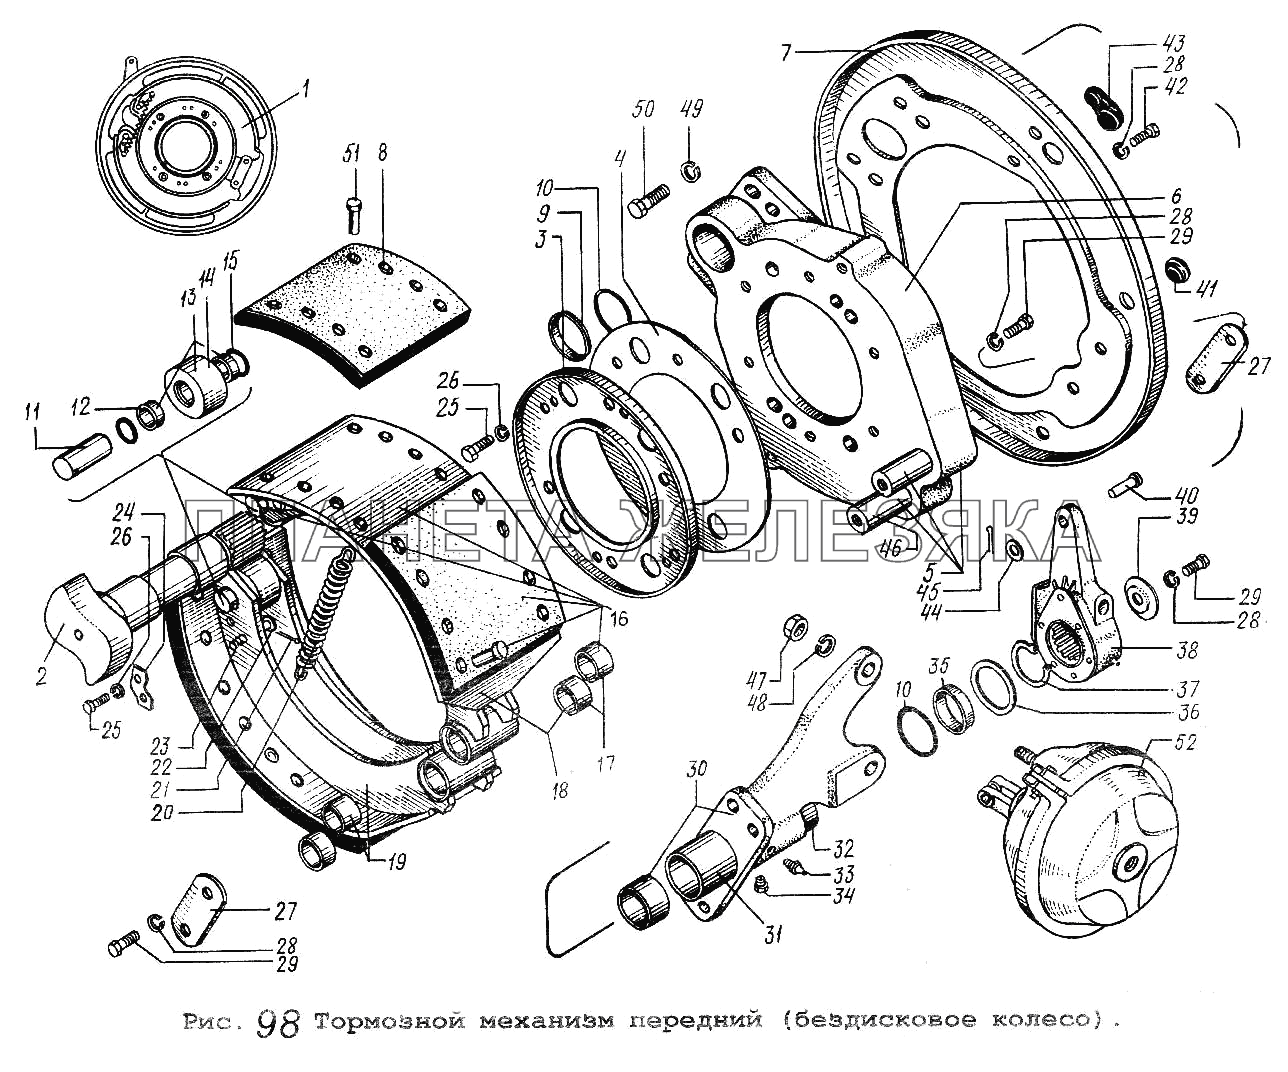 Тормозной механизм передний (бездисковое колесо) МАЗ-5551